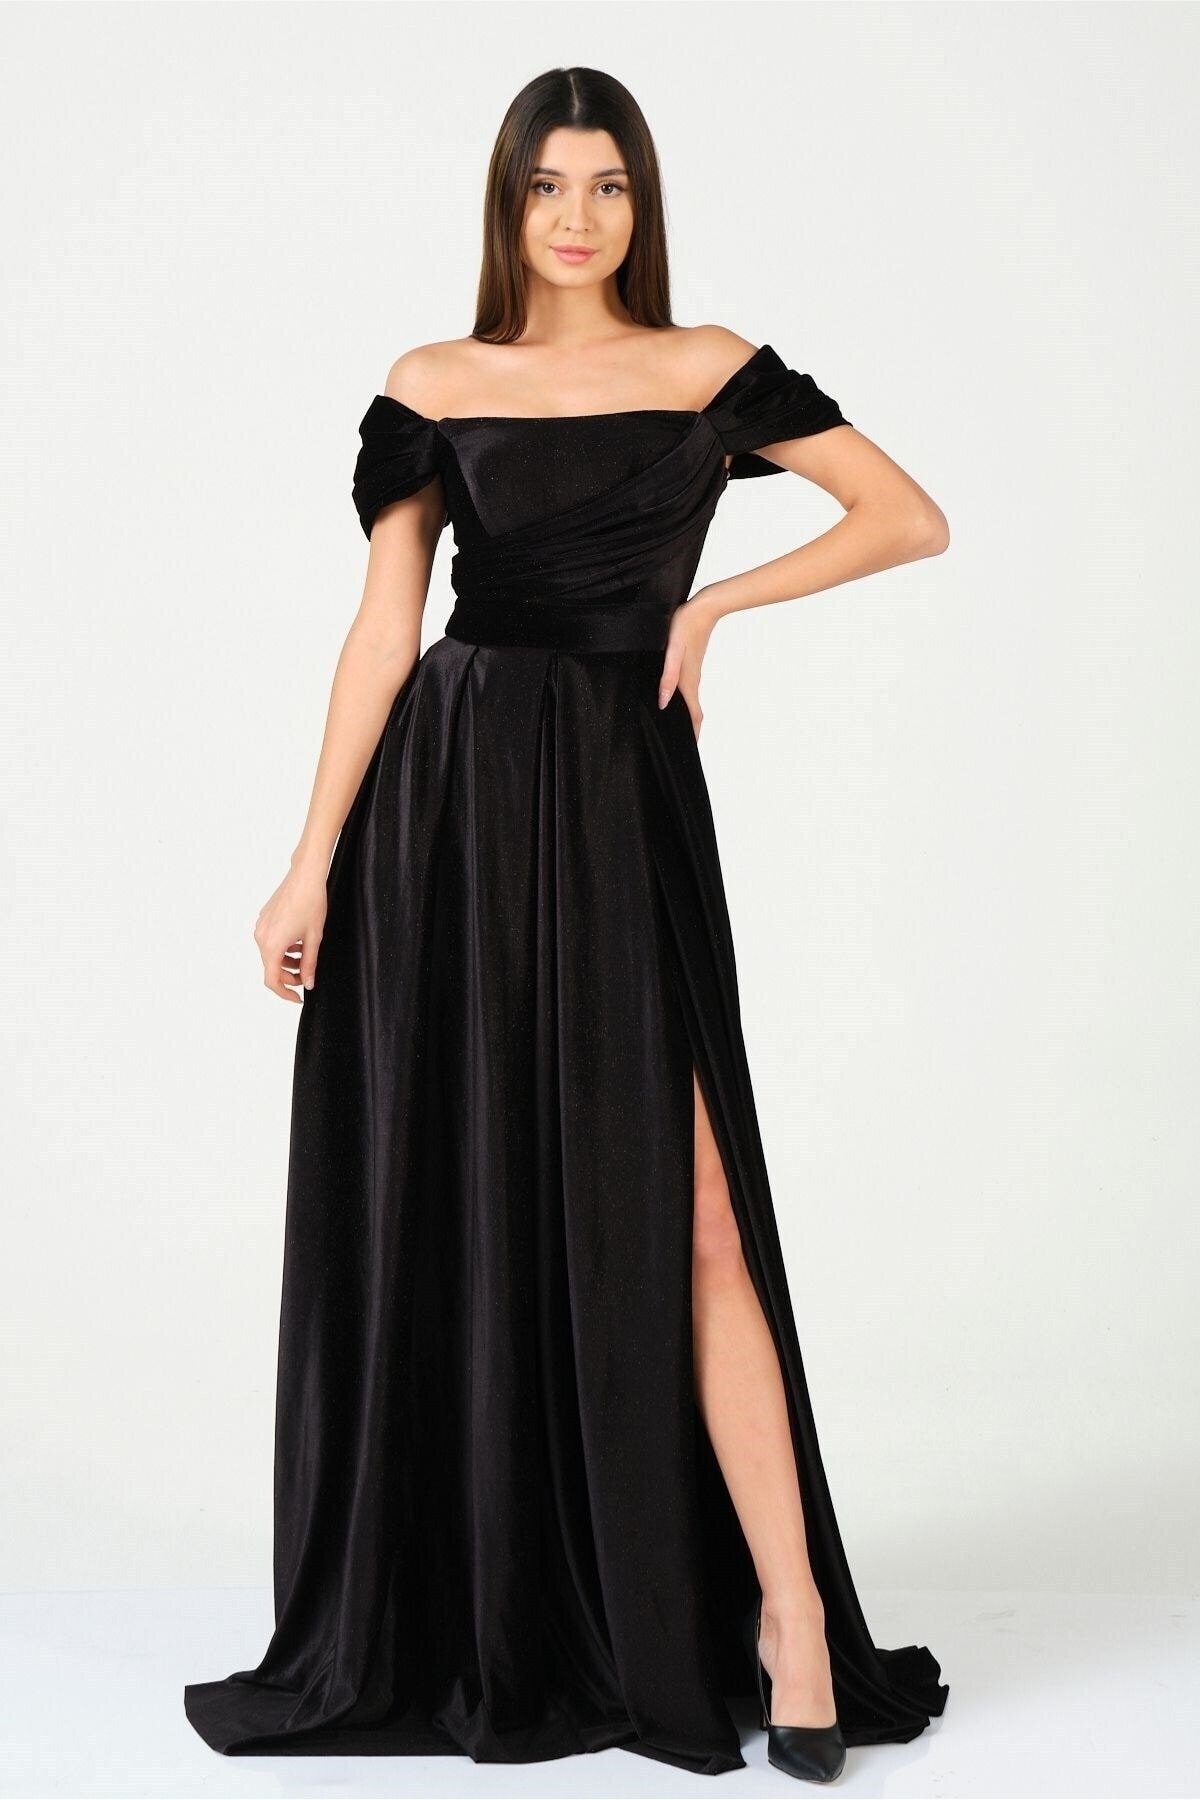 Mylace Siyah Kadife Göğüs Drape Detaylı Daire Etek Karpuz Kol Uzun Şifon Abiye Elbise